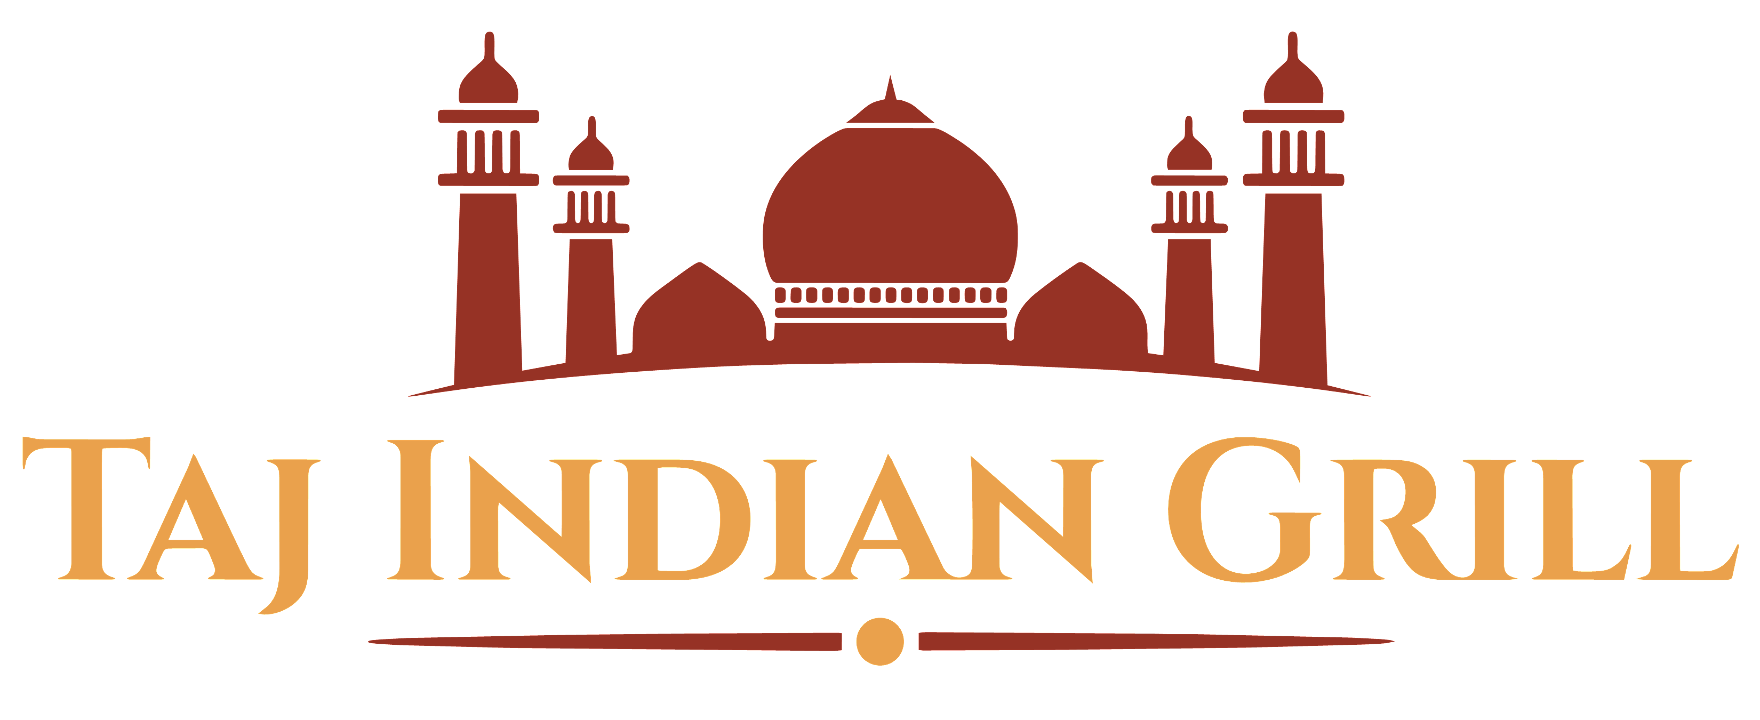 Taj Indian Grill